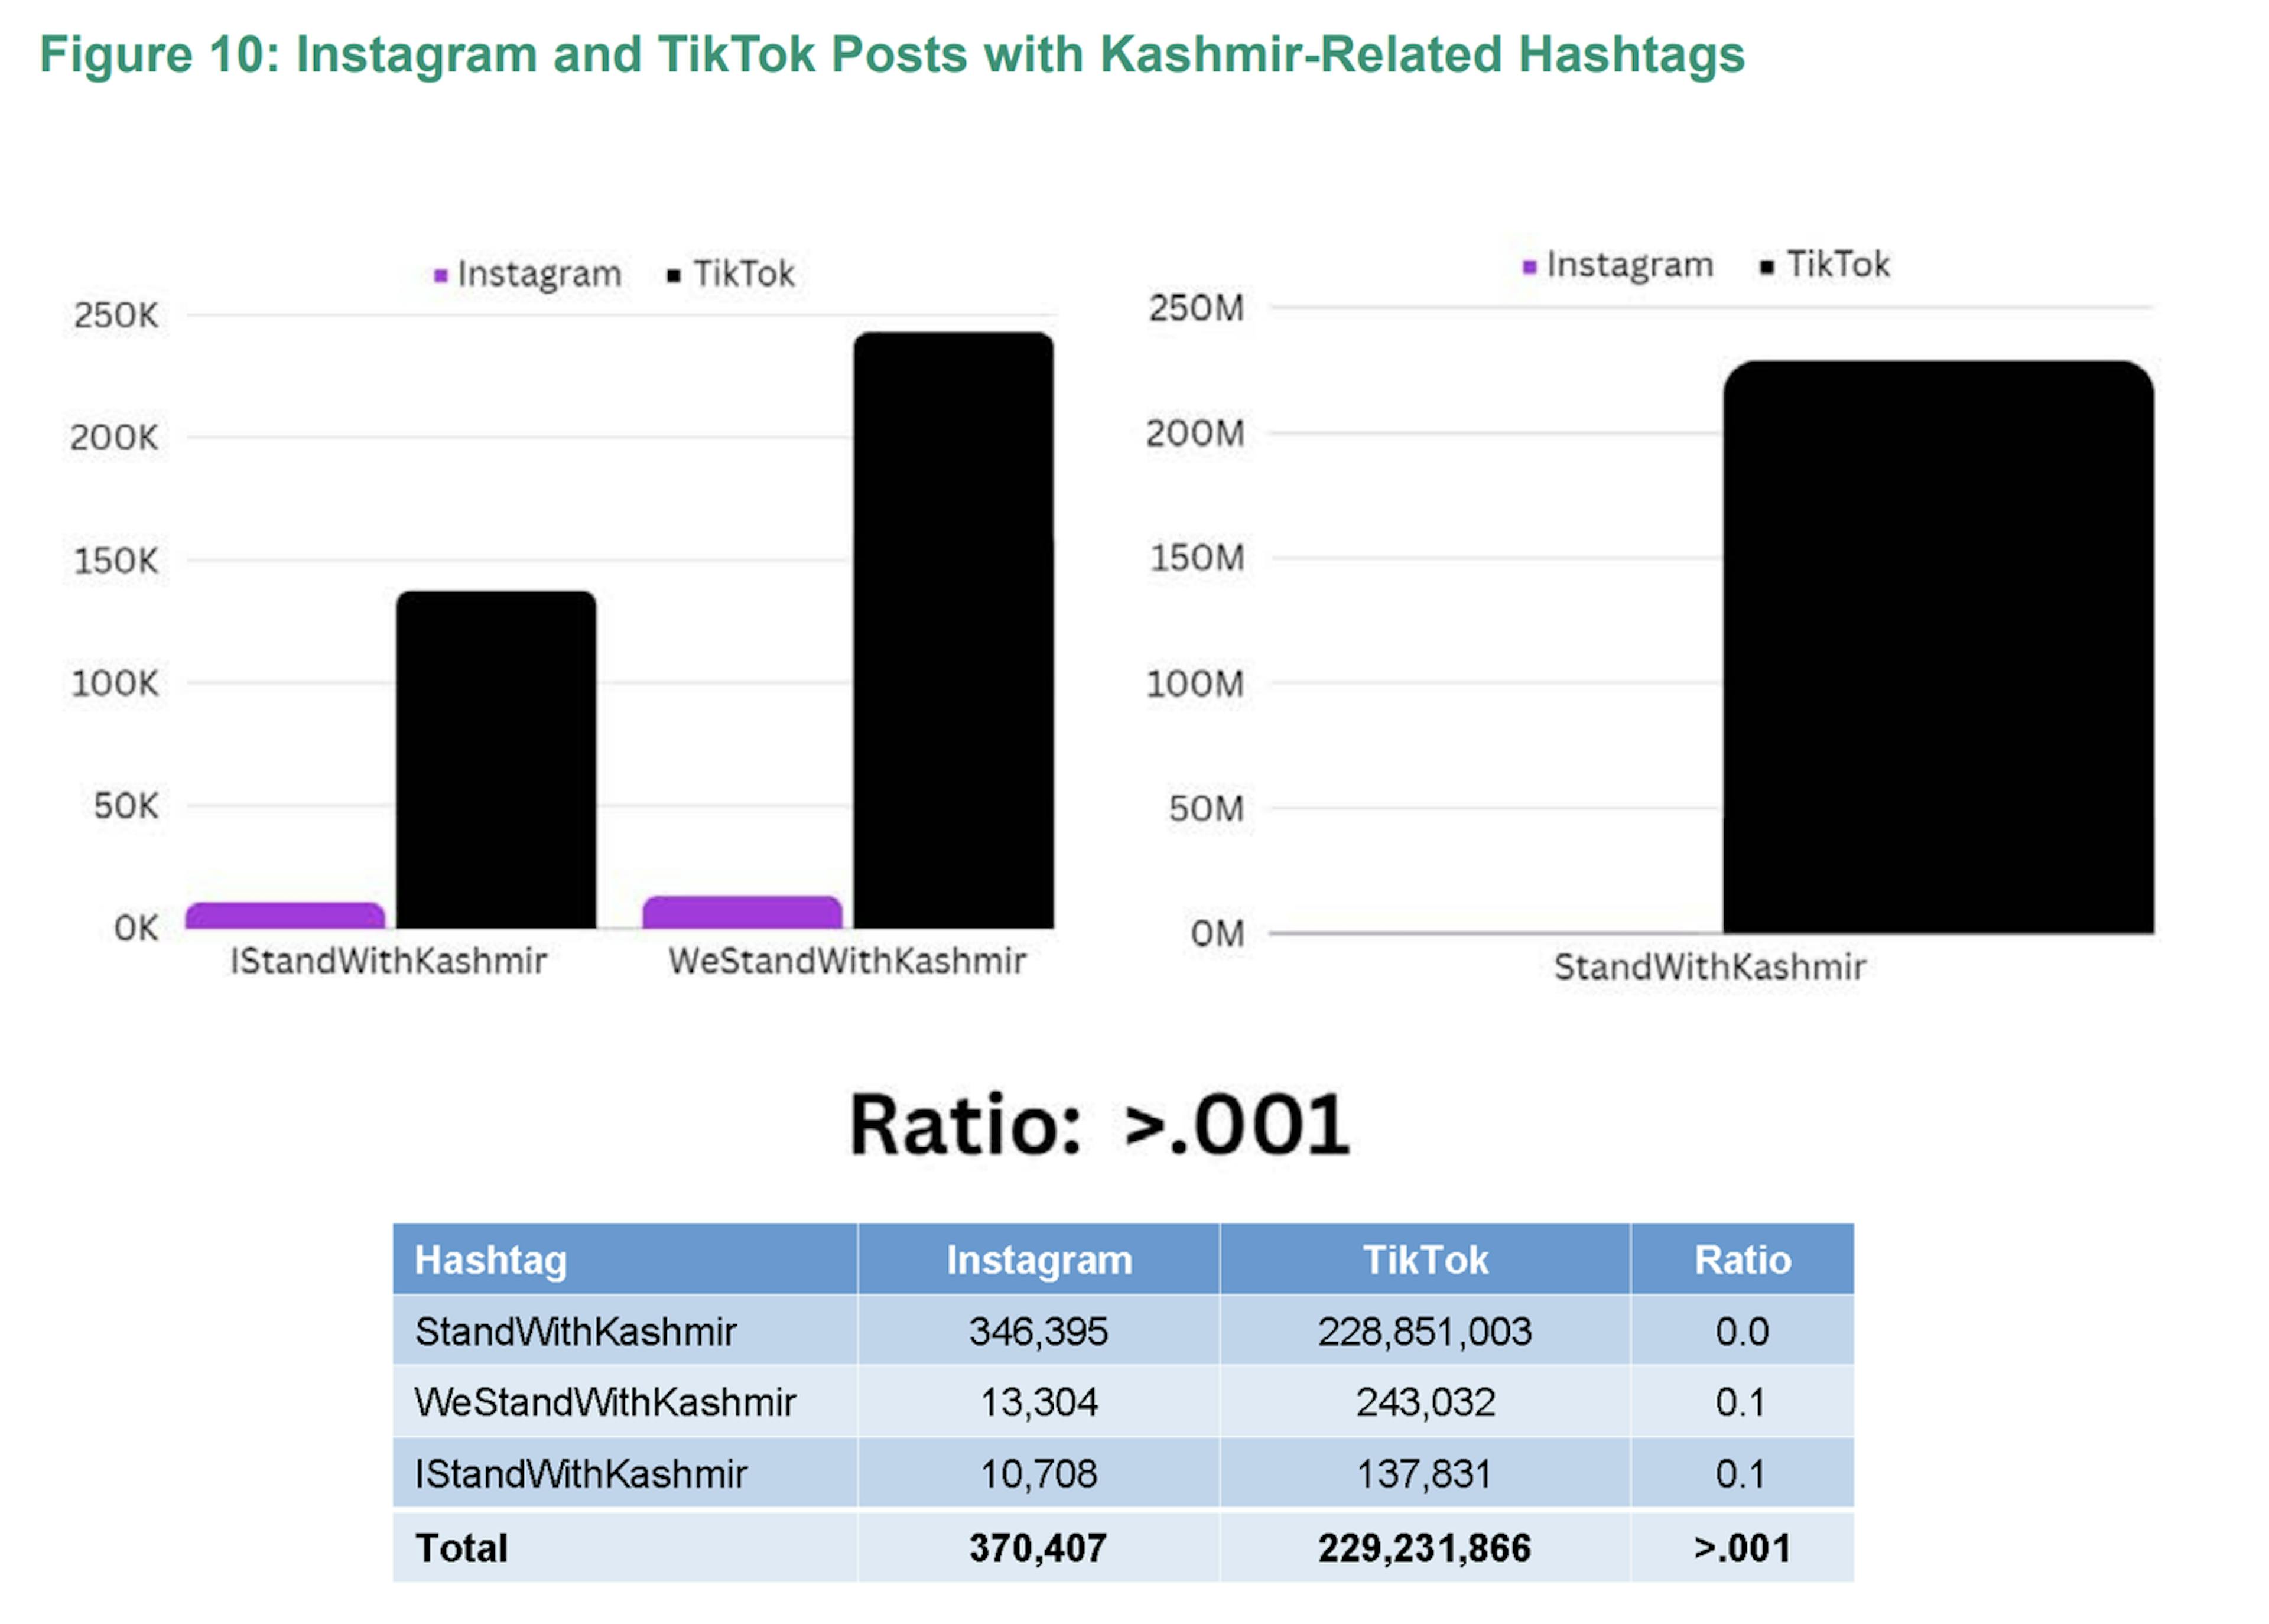 Số lượng bài đăng có hashtag liên quan đến Kashmir trên TikTok cao hơn đáng kể với con số trên TikTok lớn hơn 600 lần so với con số trên Instagram.